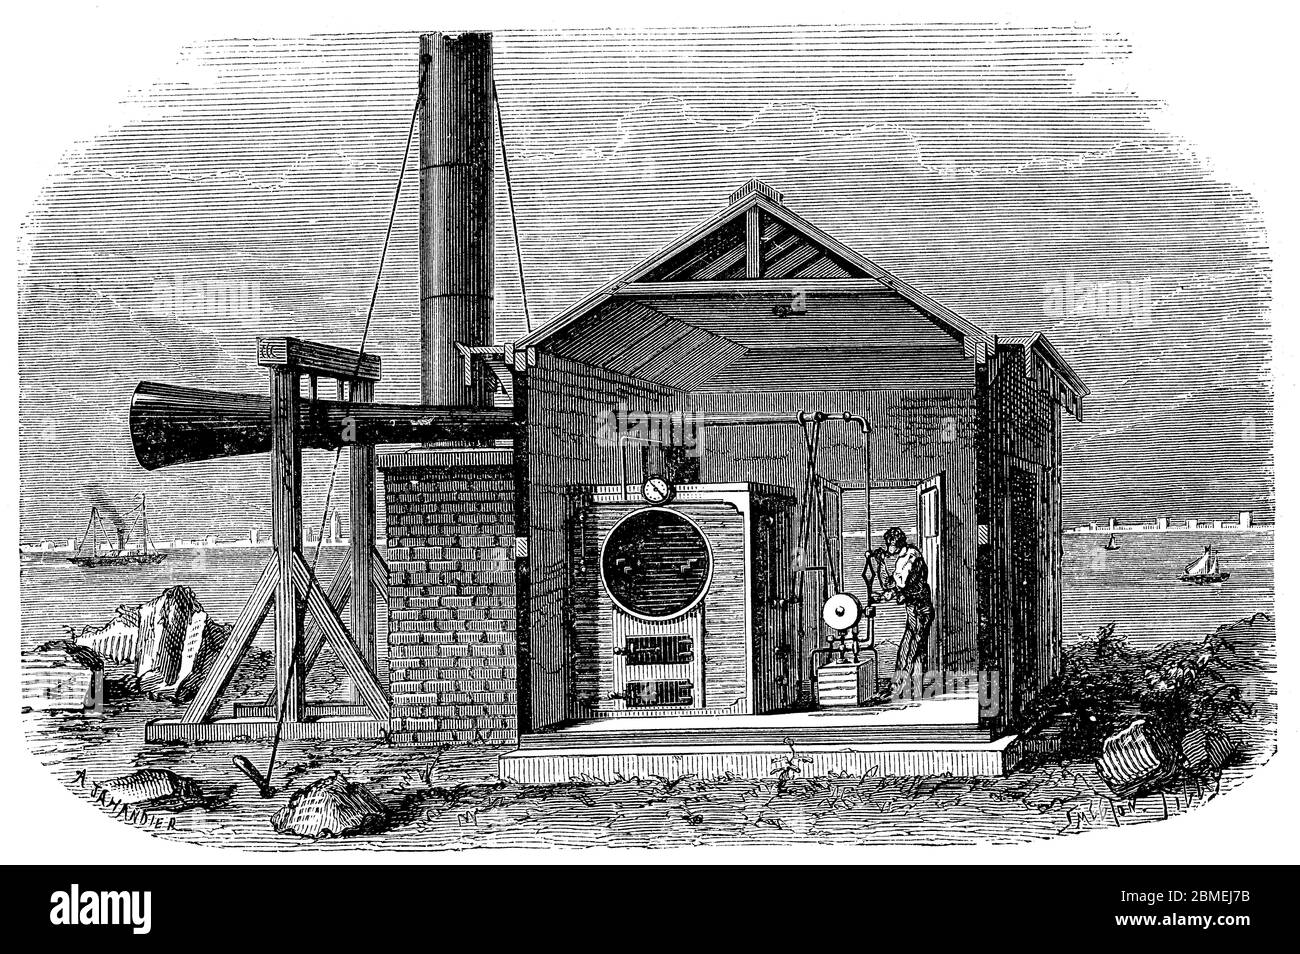 Sirena con funcionamiento a vapor instalada en un puerto marítimo para dar aviso a los navegantes. Grabado de 1892. Stock Photo